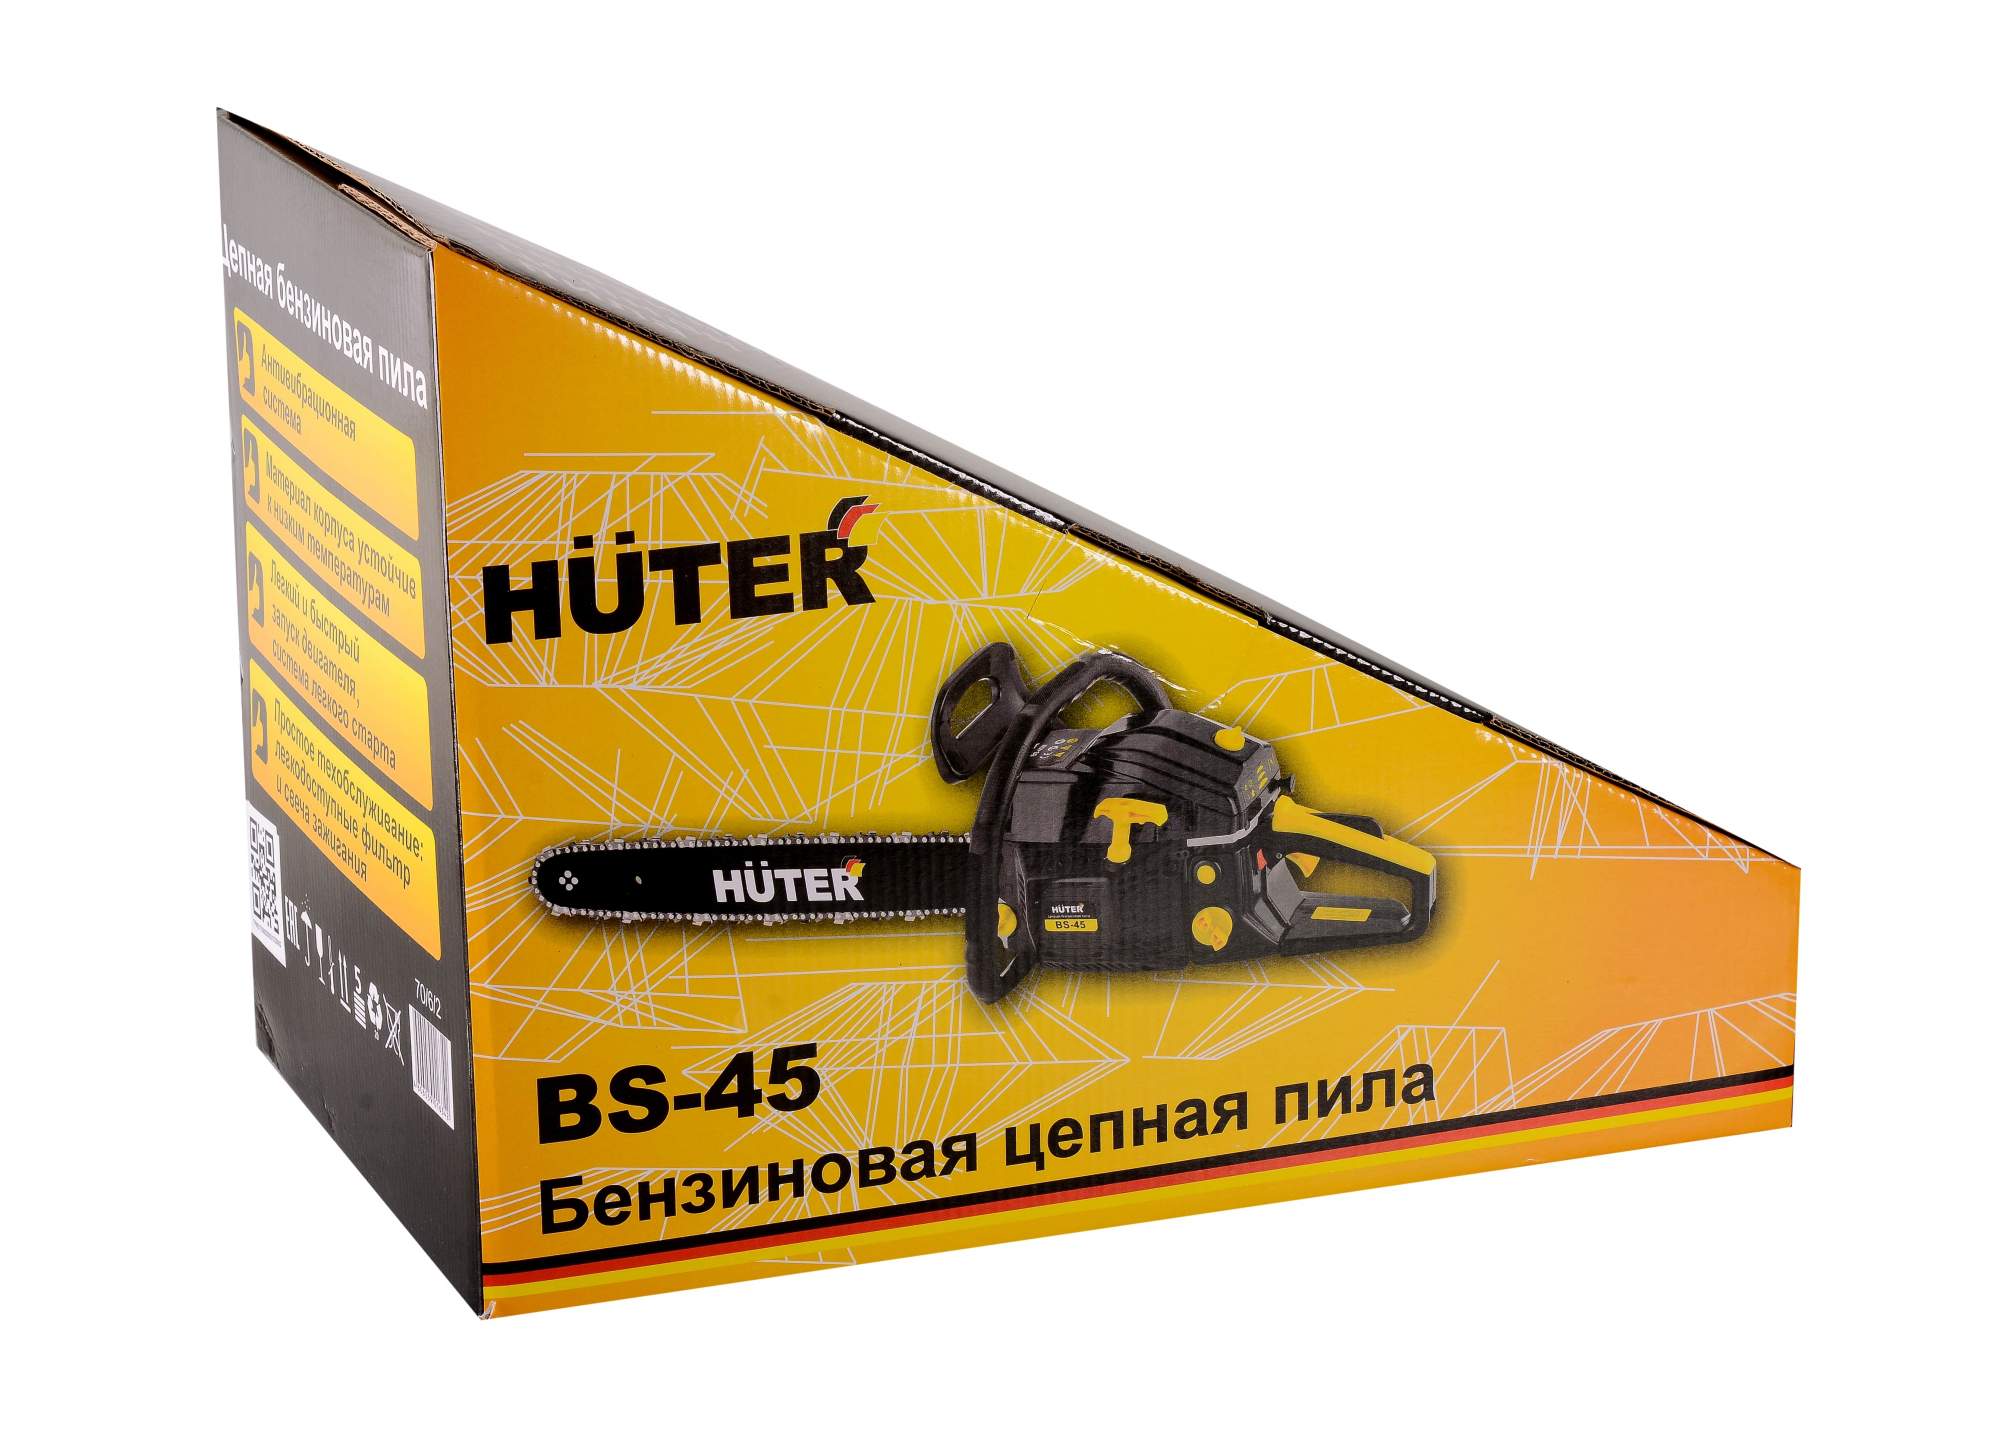 Цепная бензопила huter bs-40 родом из германии — обзор, отзывы, инструкция, регулировка карбюратора